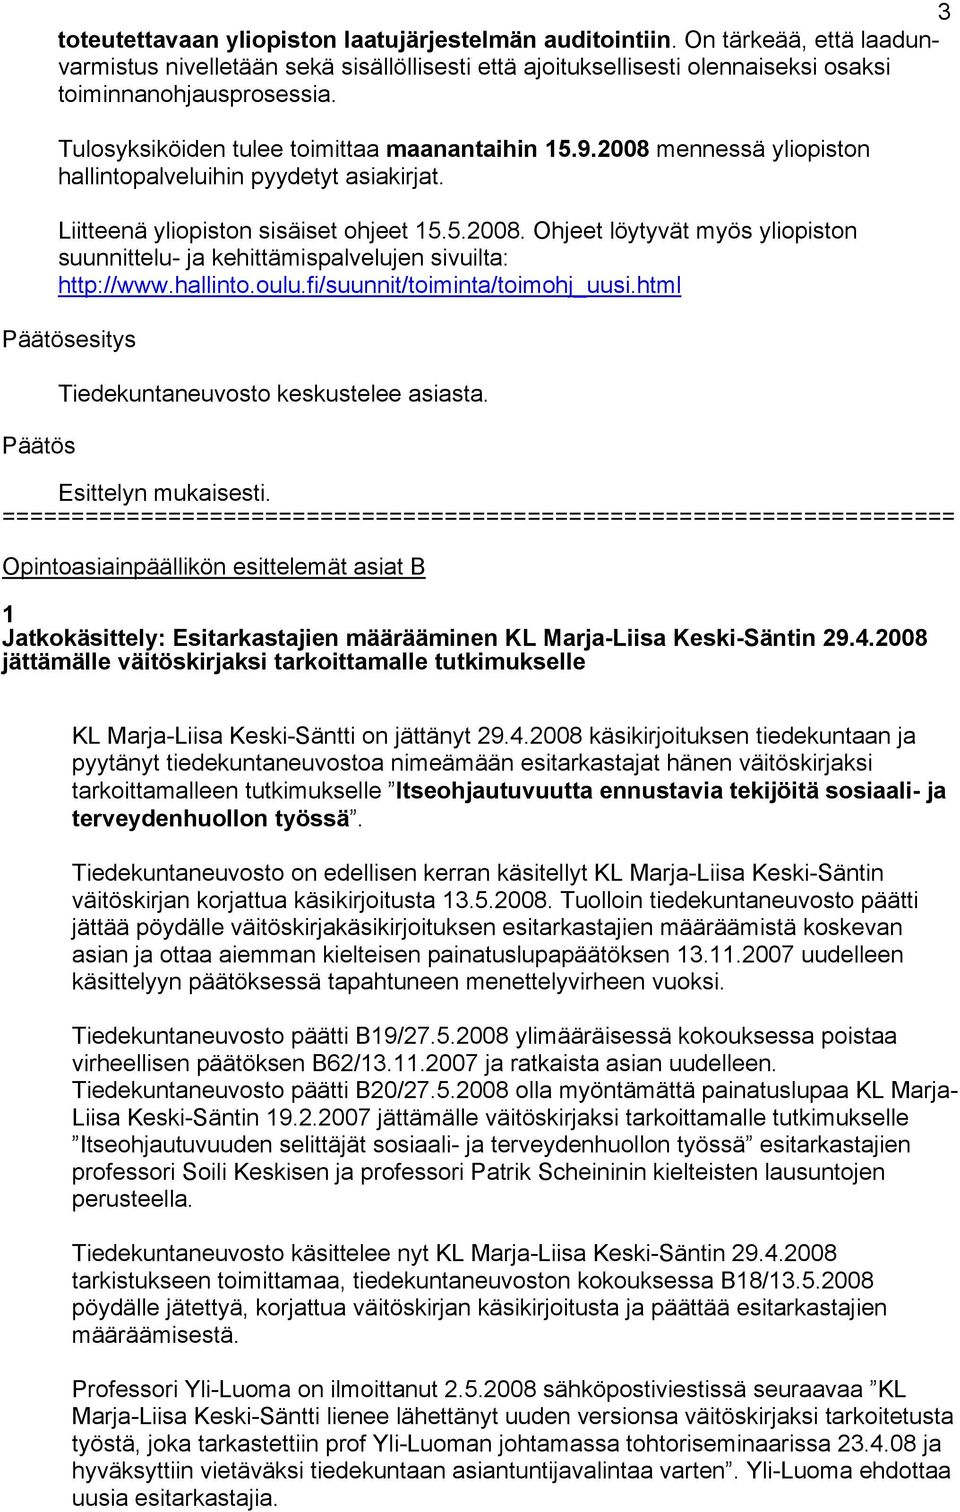 hallinto.oulu.fi/suunnit/toiminta/toimohj_uusi.html esitys Tiedekuntaneuvosto keskustelee asiasta. Esittelyn mukaisesti.